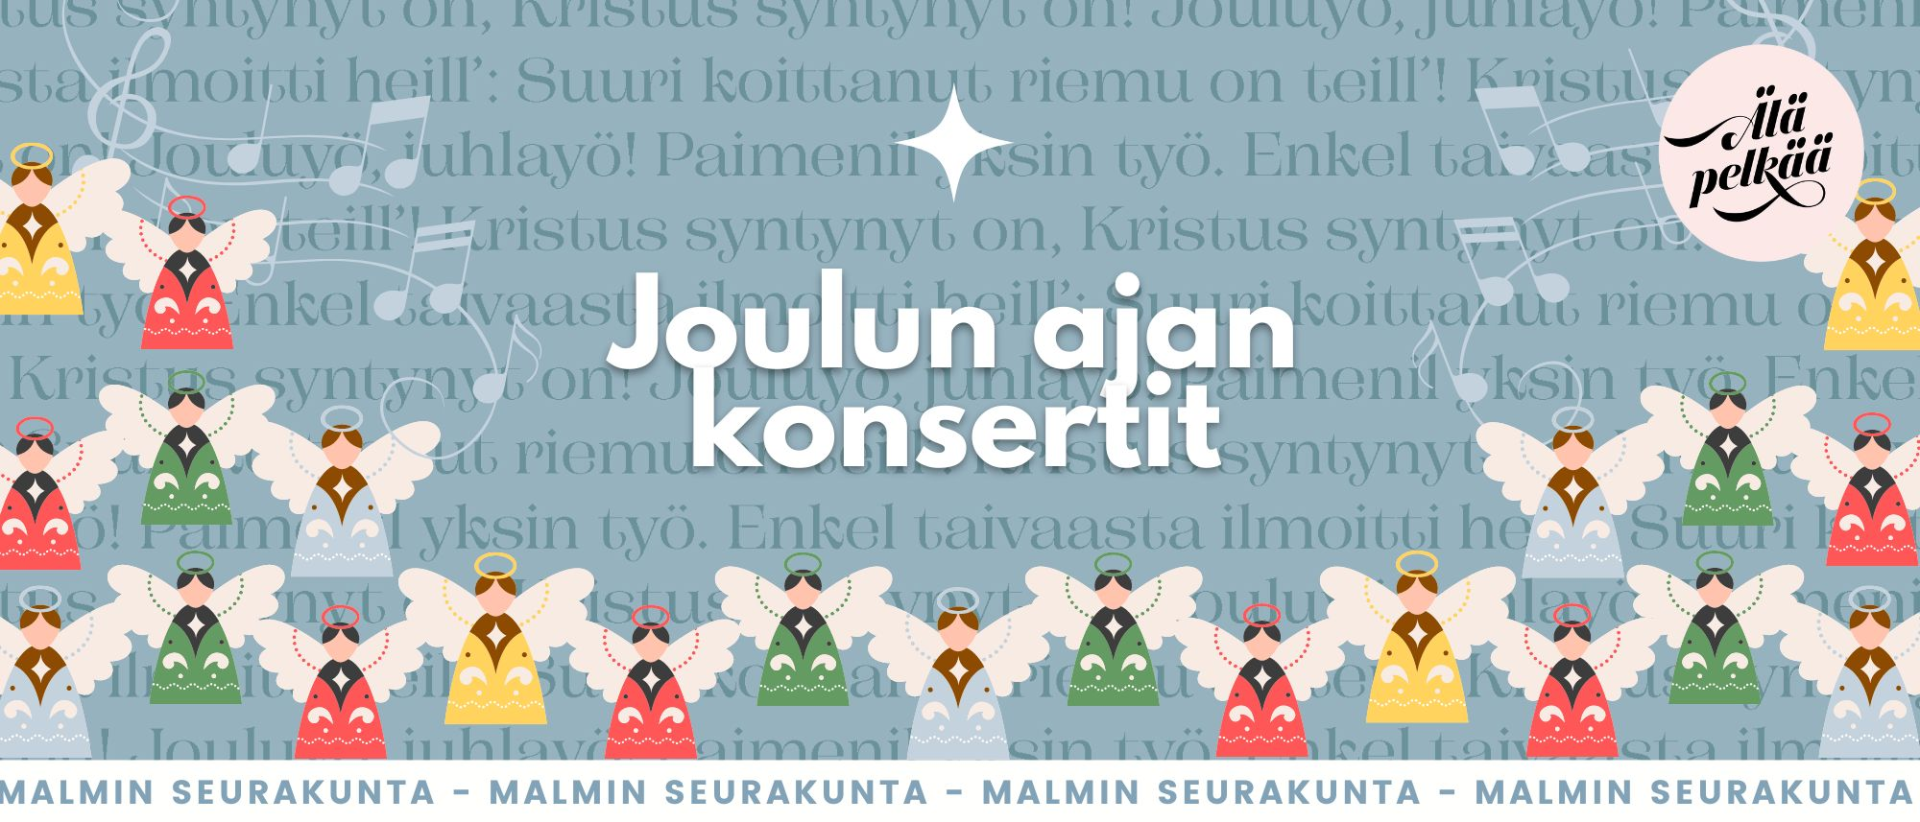 Teksti Joulun ajan konsertit Malmin seurakunta, piirrettyjä enkeleitä joululaulusanoituksen päällä